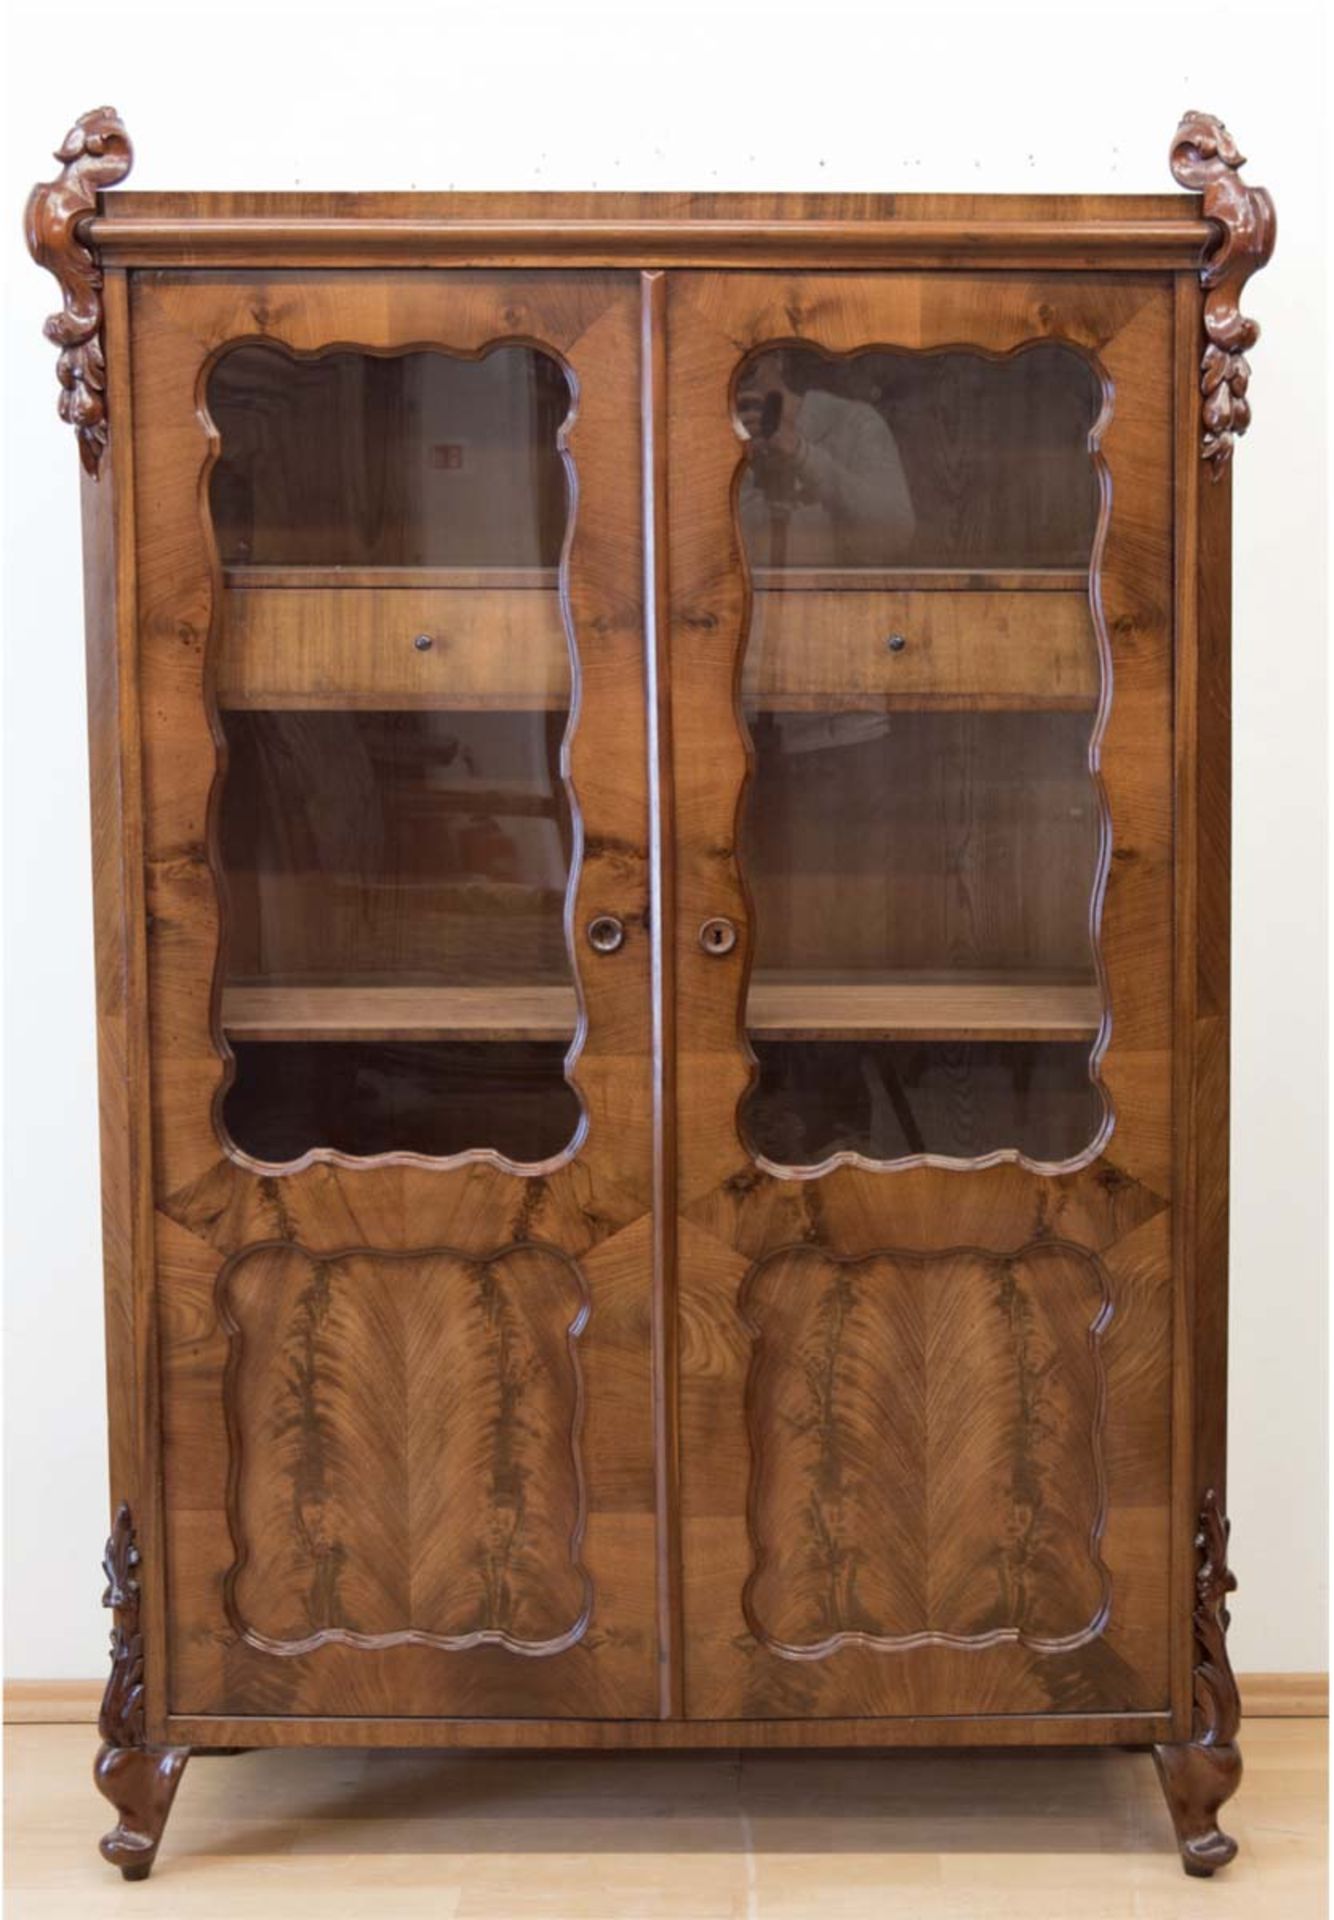 Bücherschrank um 1870, Mahagoni, 2-türig verglast, 2 Schubladen auf halber Höhe,163x107x42 cm